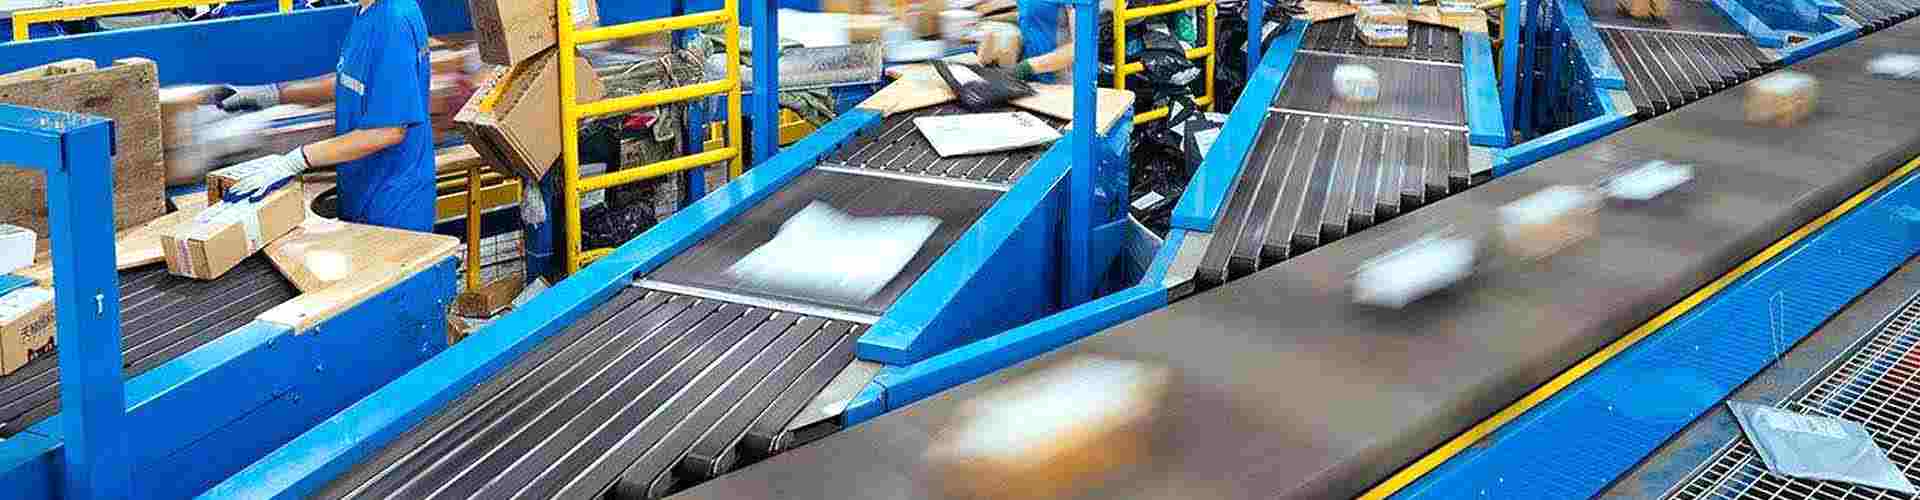 泰州自动生产,自动流水线,自动装配作业是工业生产一种常态装配流水线